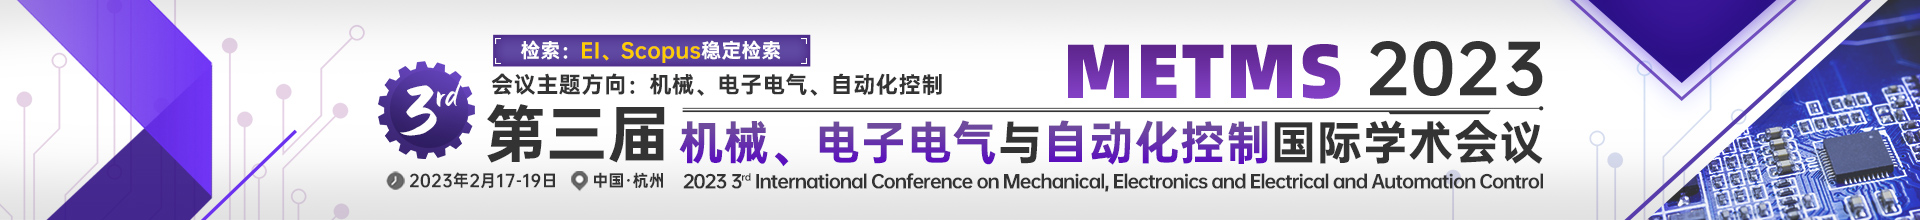 2月杭州-METMS-学术会议云.jpg